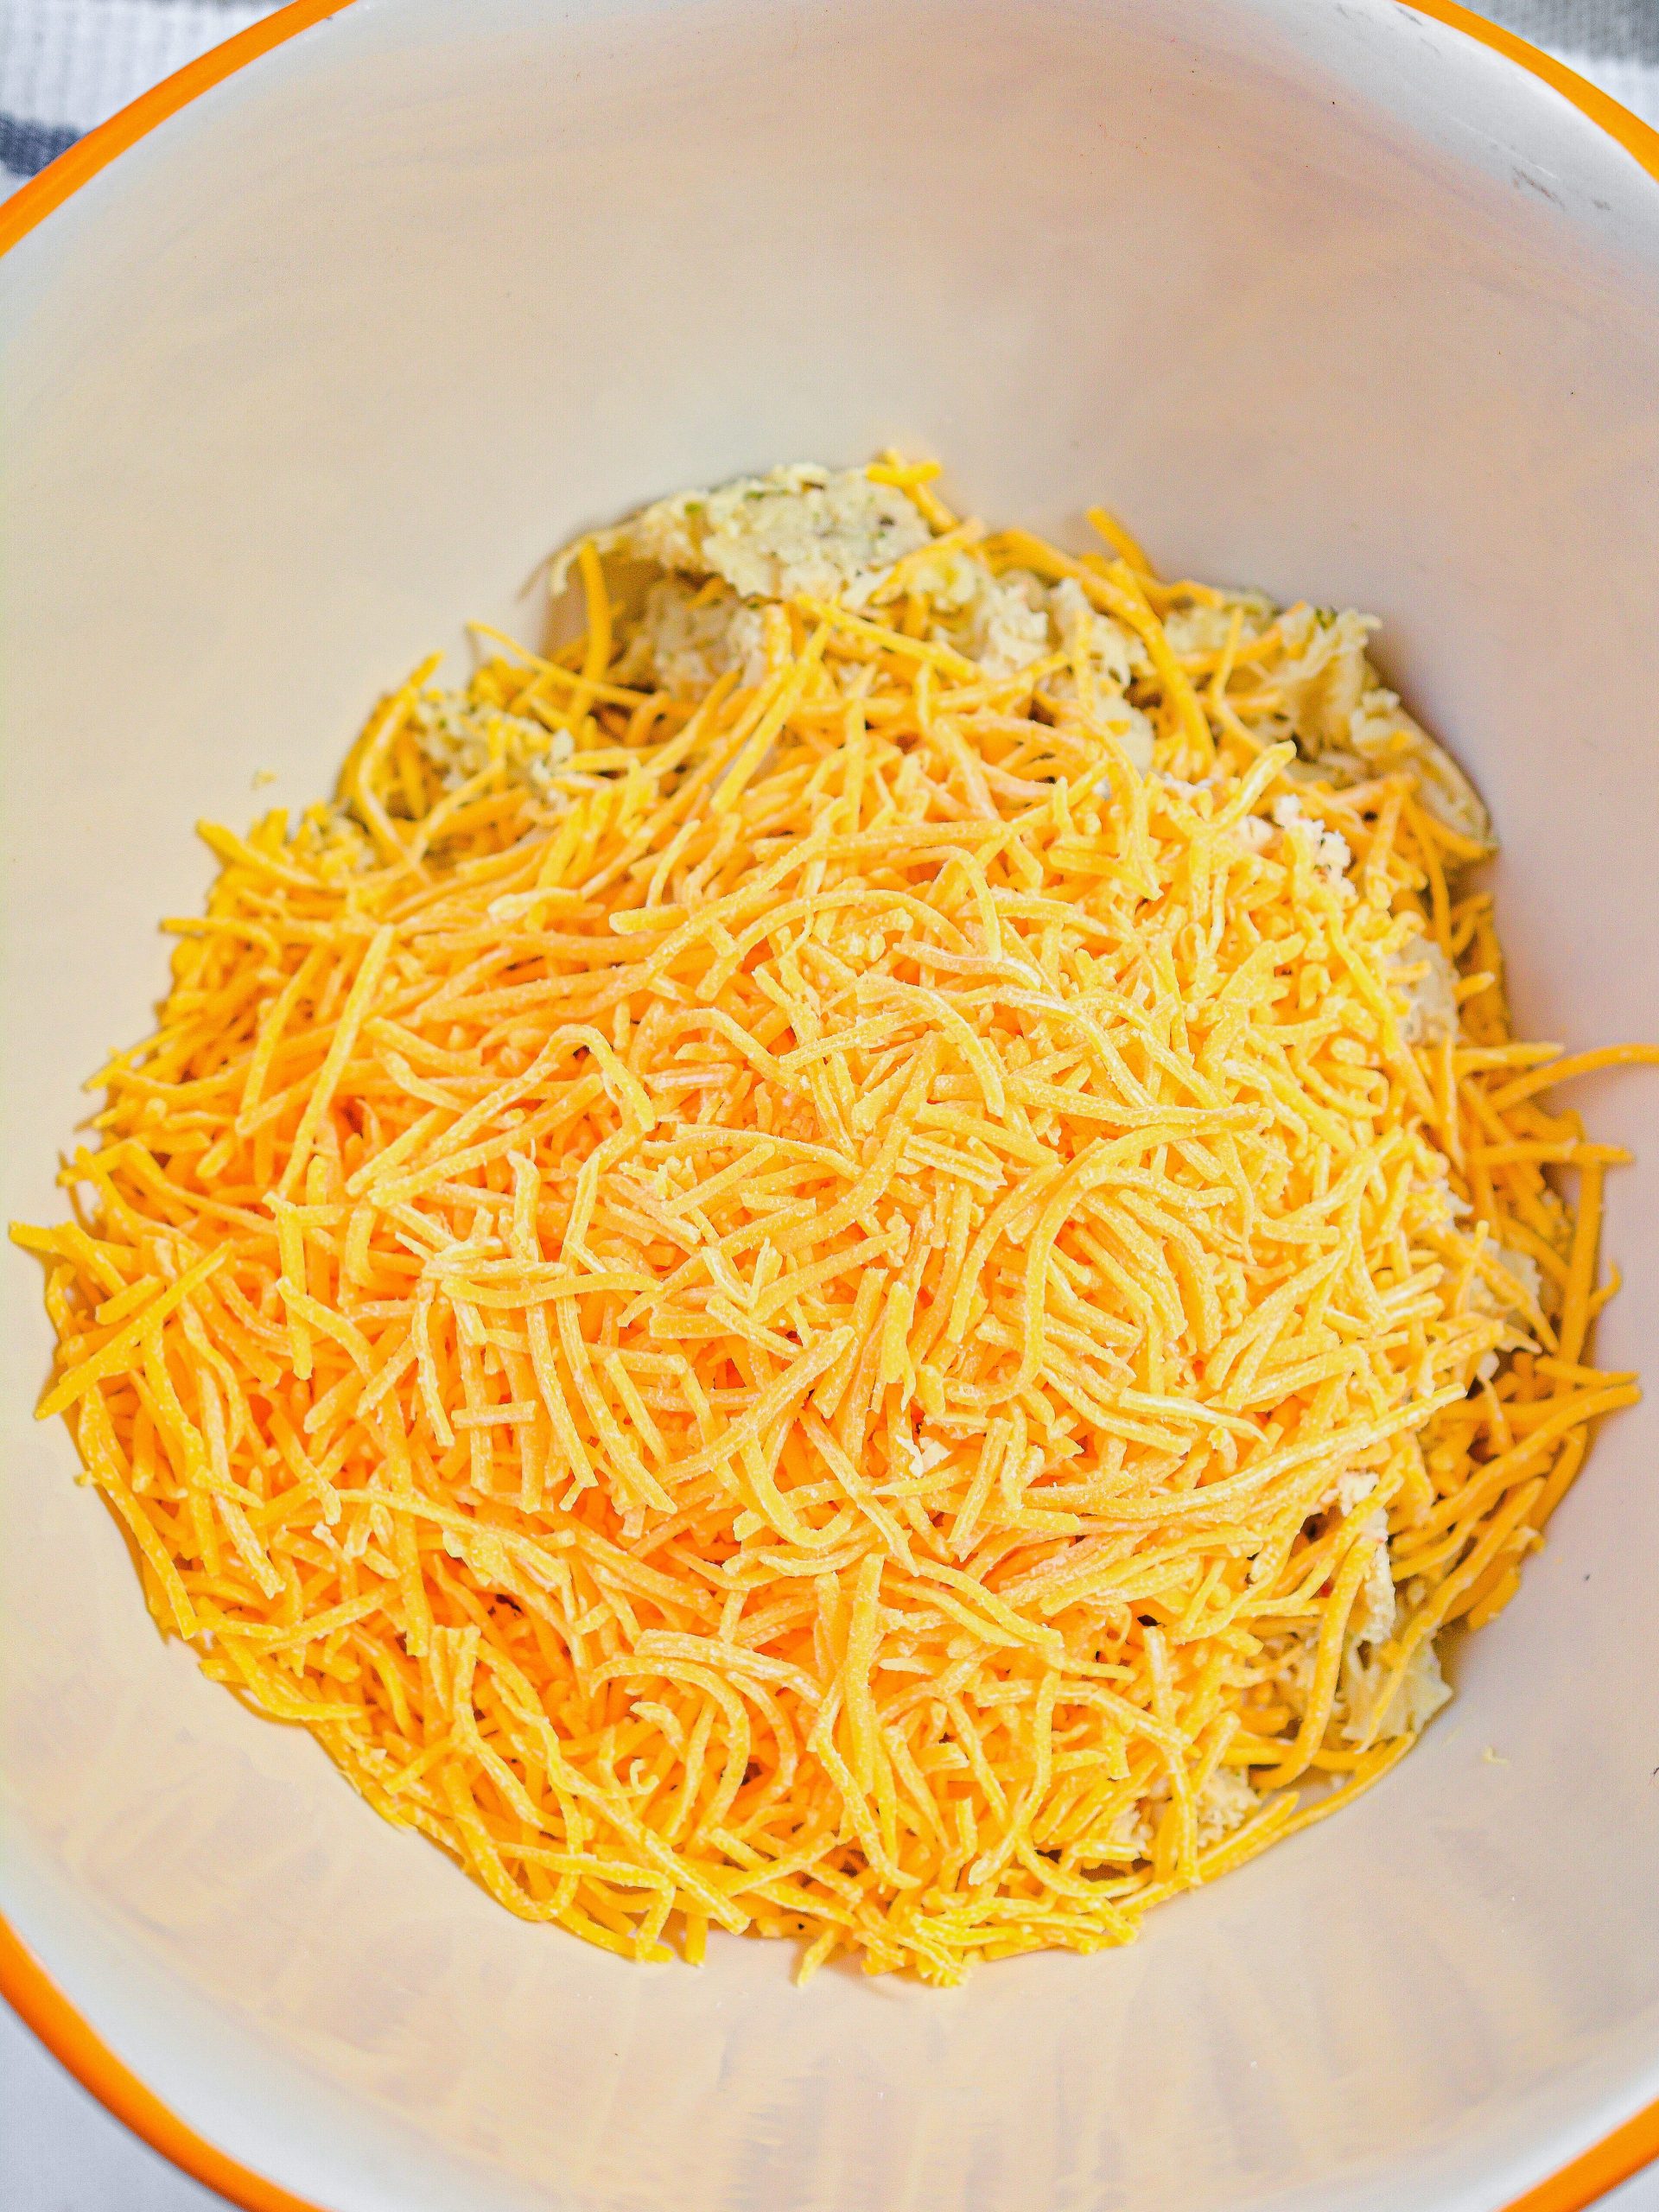 add 1 cup of cheddar cheese shredded.